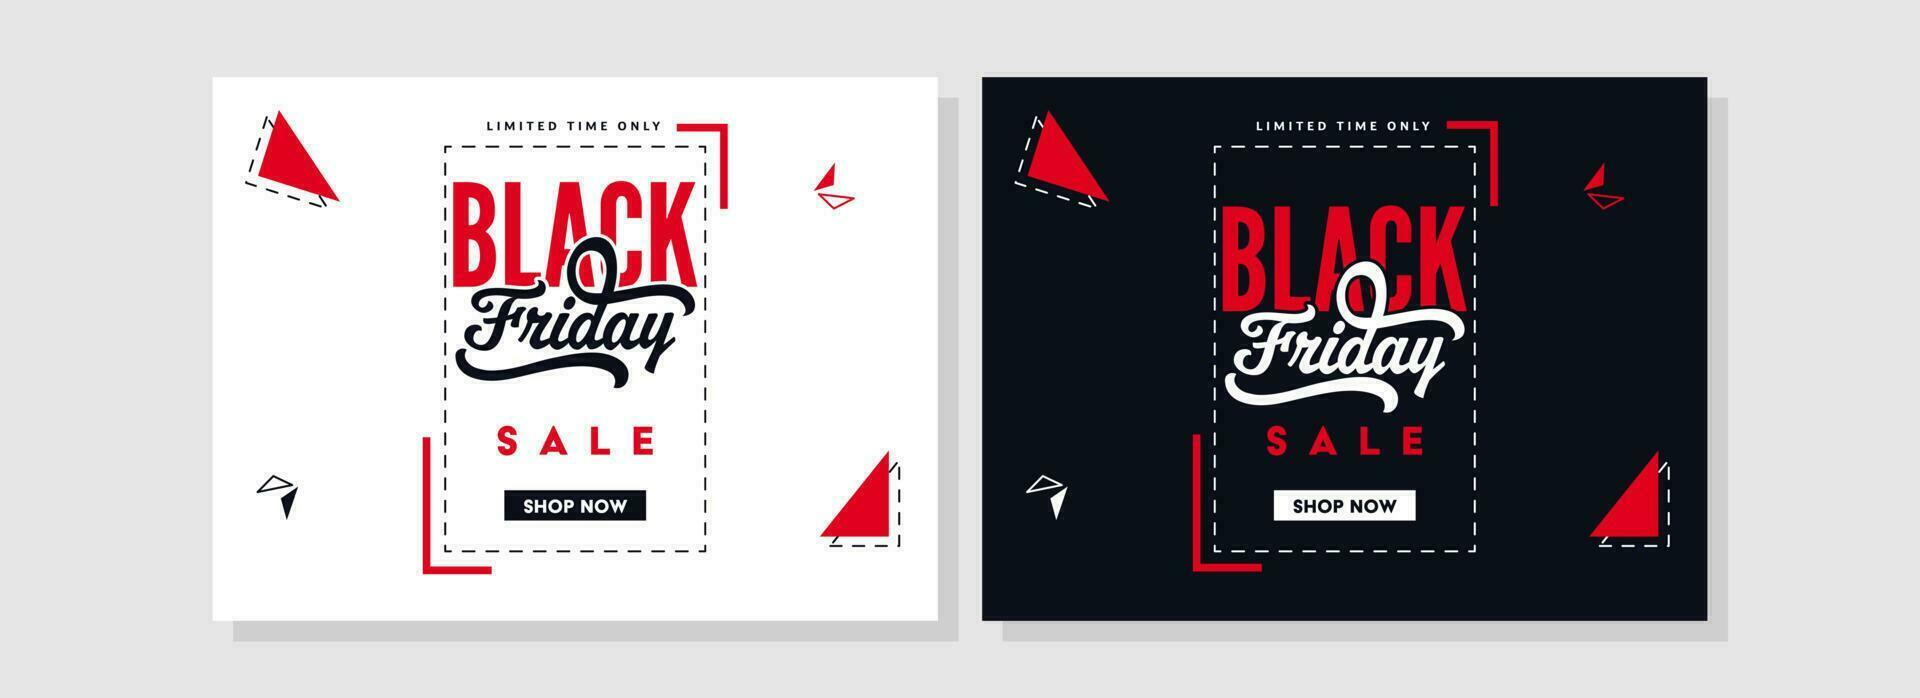 negro viernes rebaja póster diseño decorado con triángulo formas en dos color opciones vector